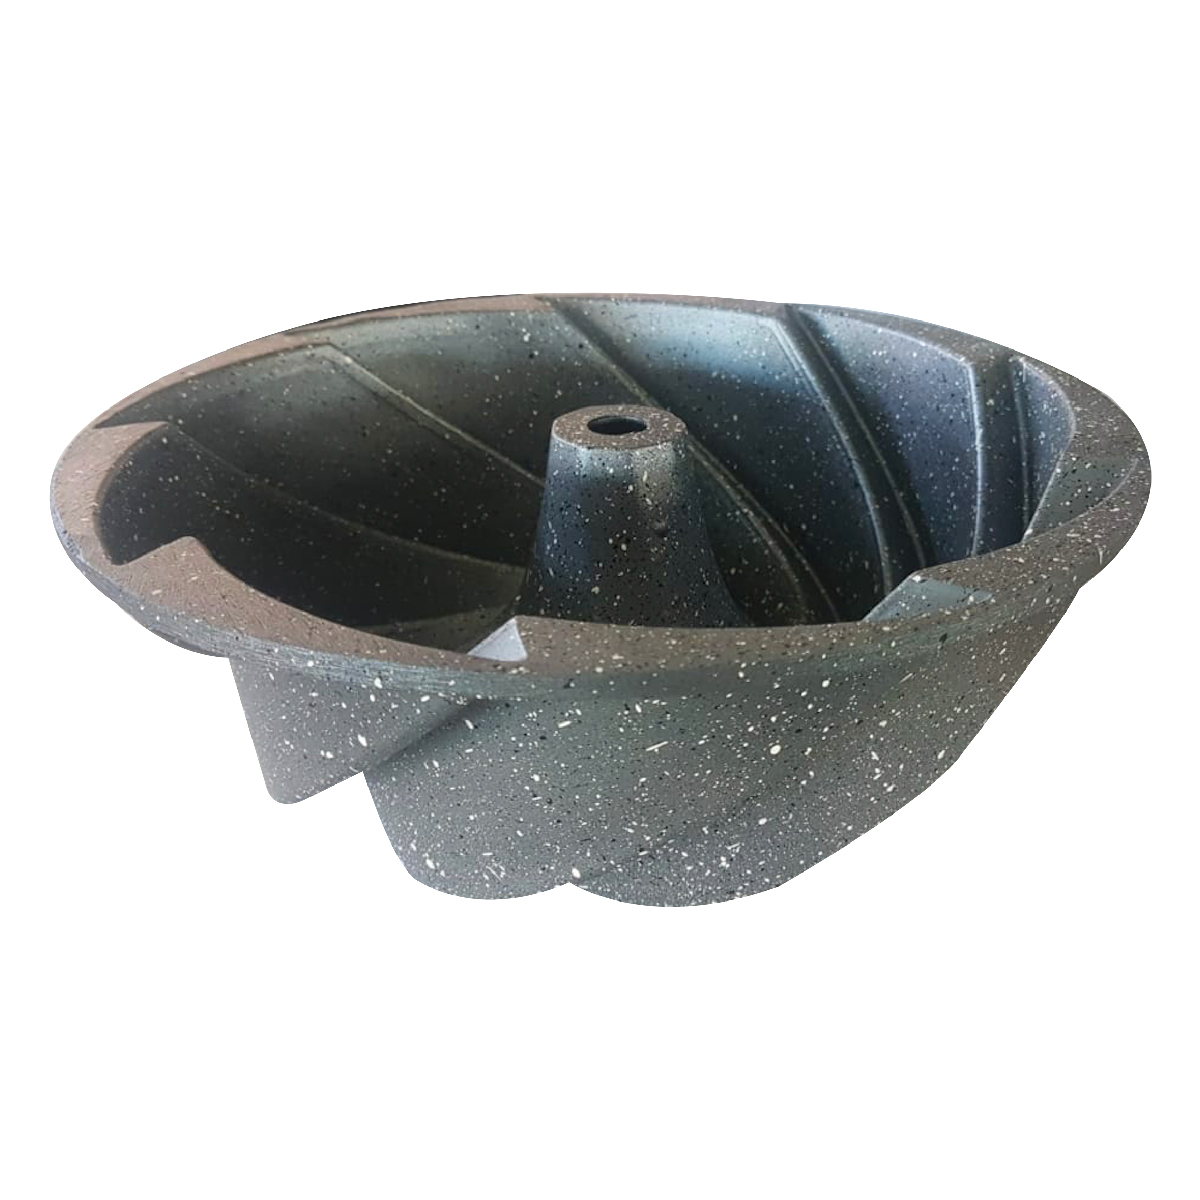 Dosthoff Premium Granite Coated Bundt form cake pan, 26 cm, GDFXPR1 Grey